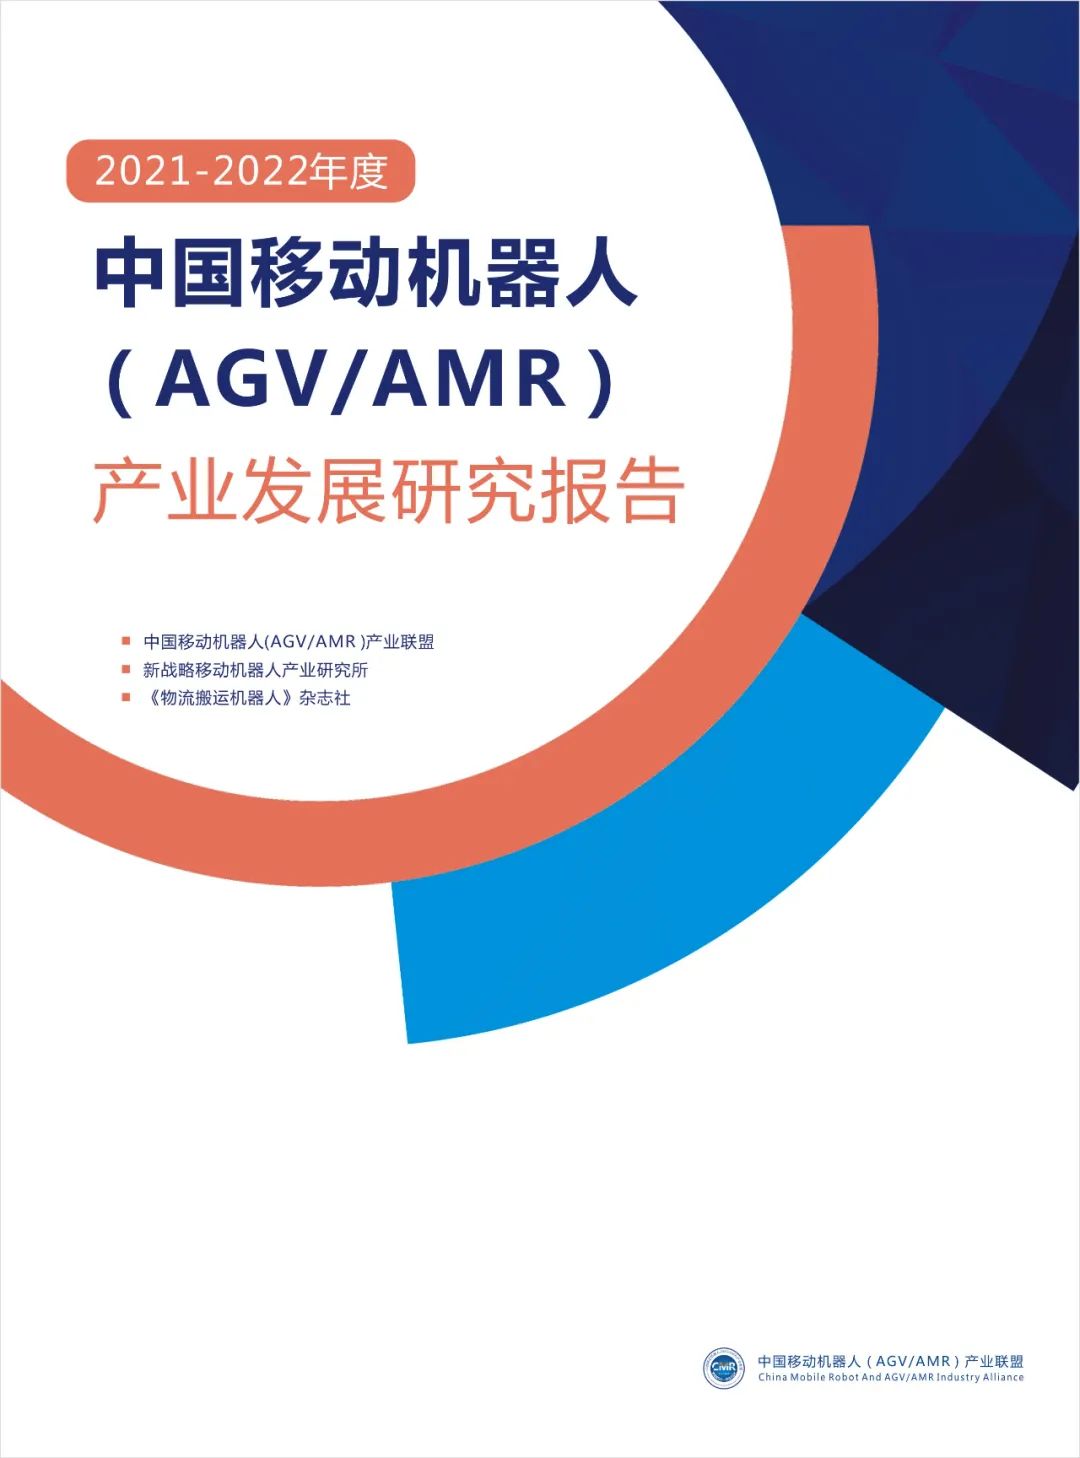 2021年度中国AGV/AMR产业发展报告正式发布！